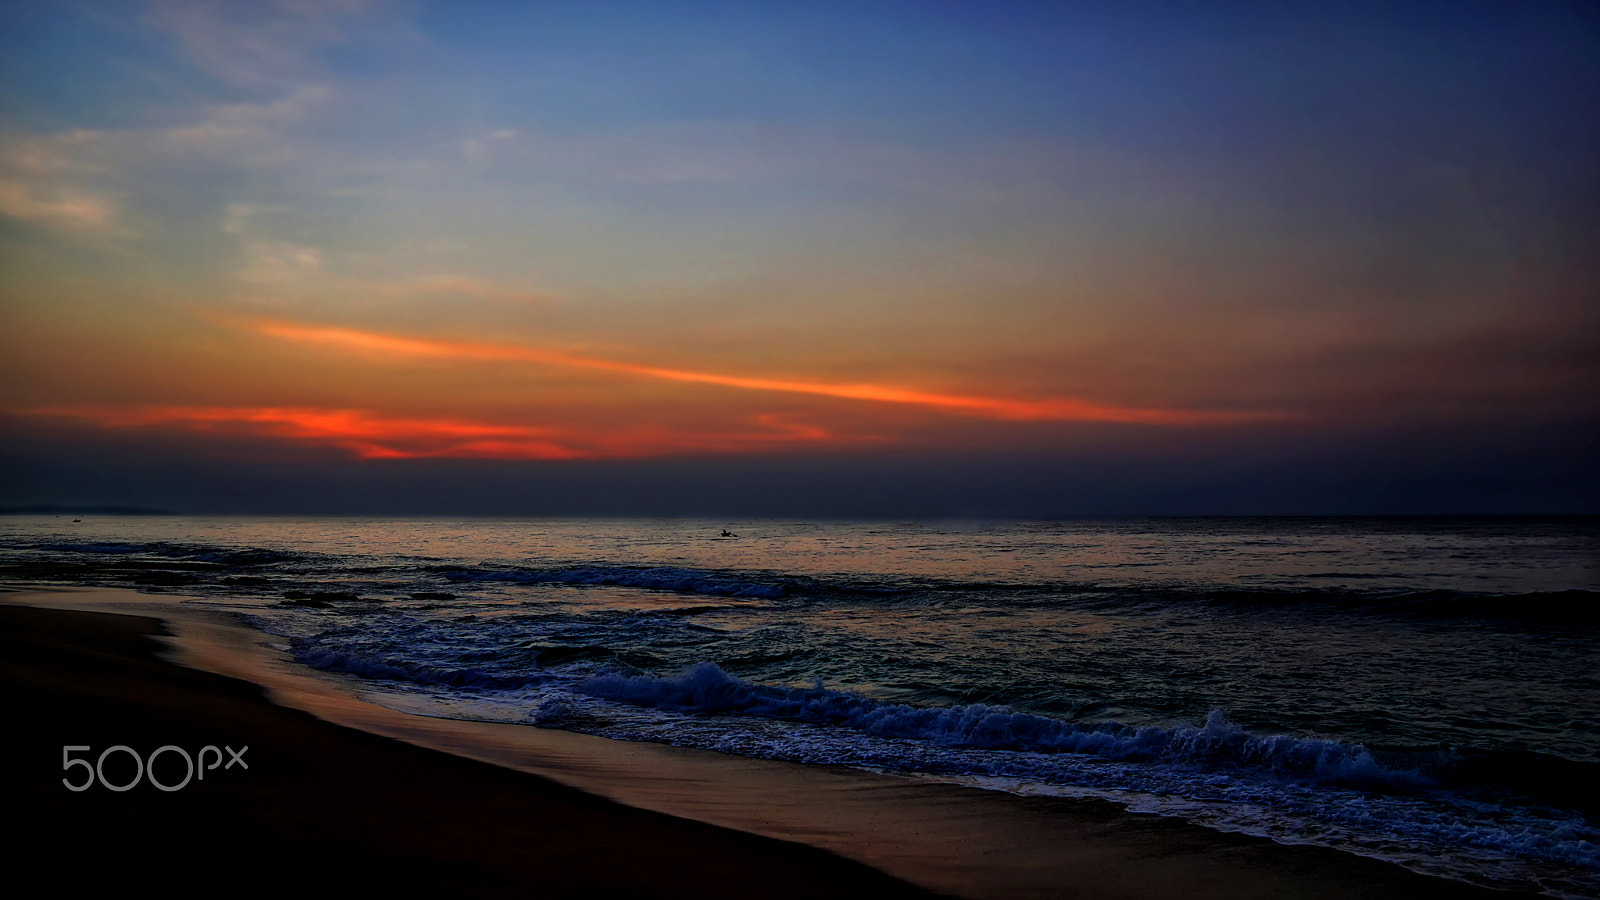 Sony a5100 + Sigma 19mm F2.8 EX DN sample photo. Matara  beach sunset photography